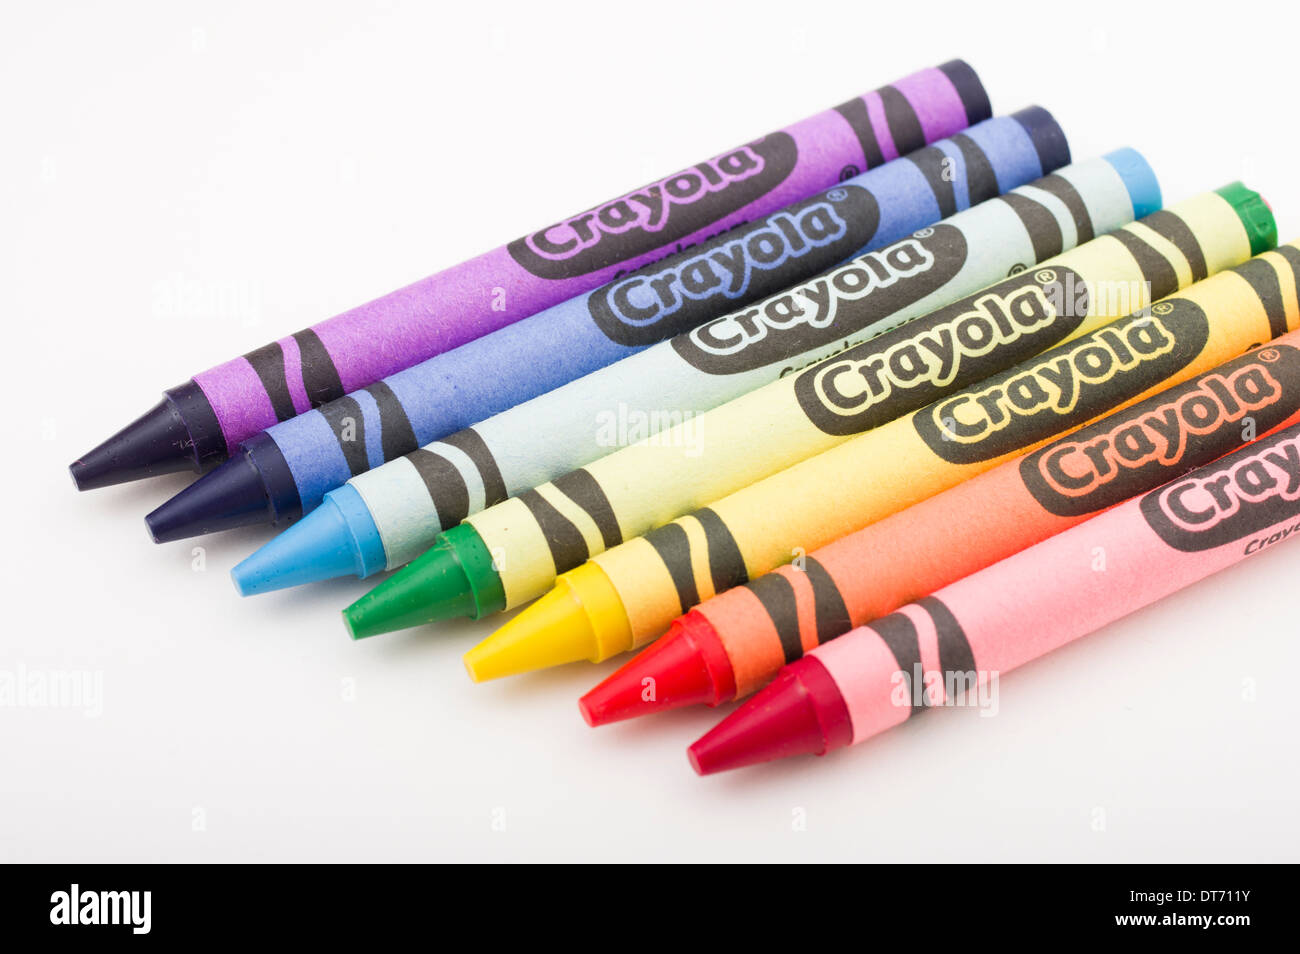 Les crayons de cire Crayola faite principalement de pétrole paraffine un jouet pour enfants Banque D'Images